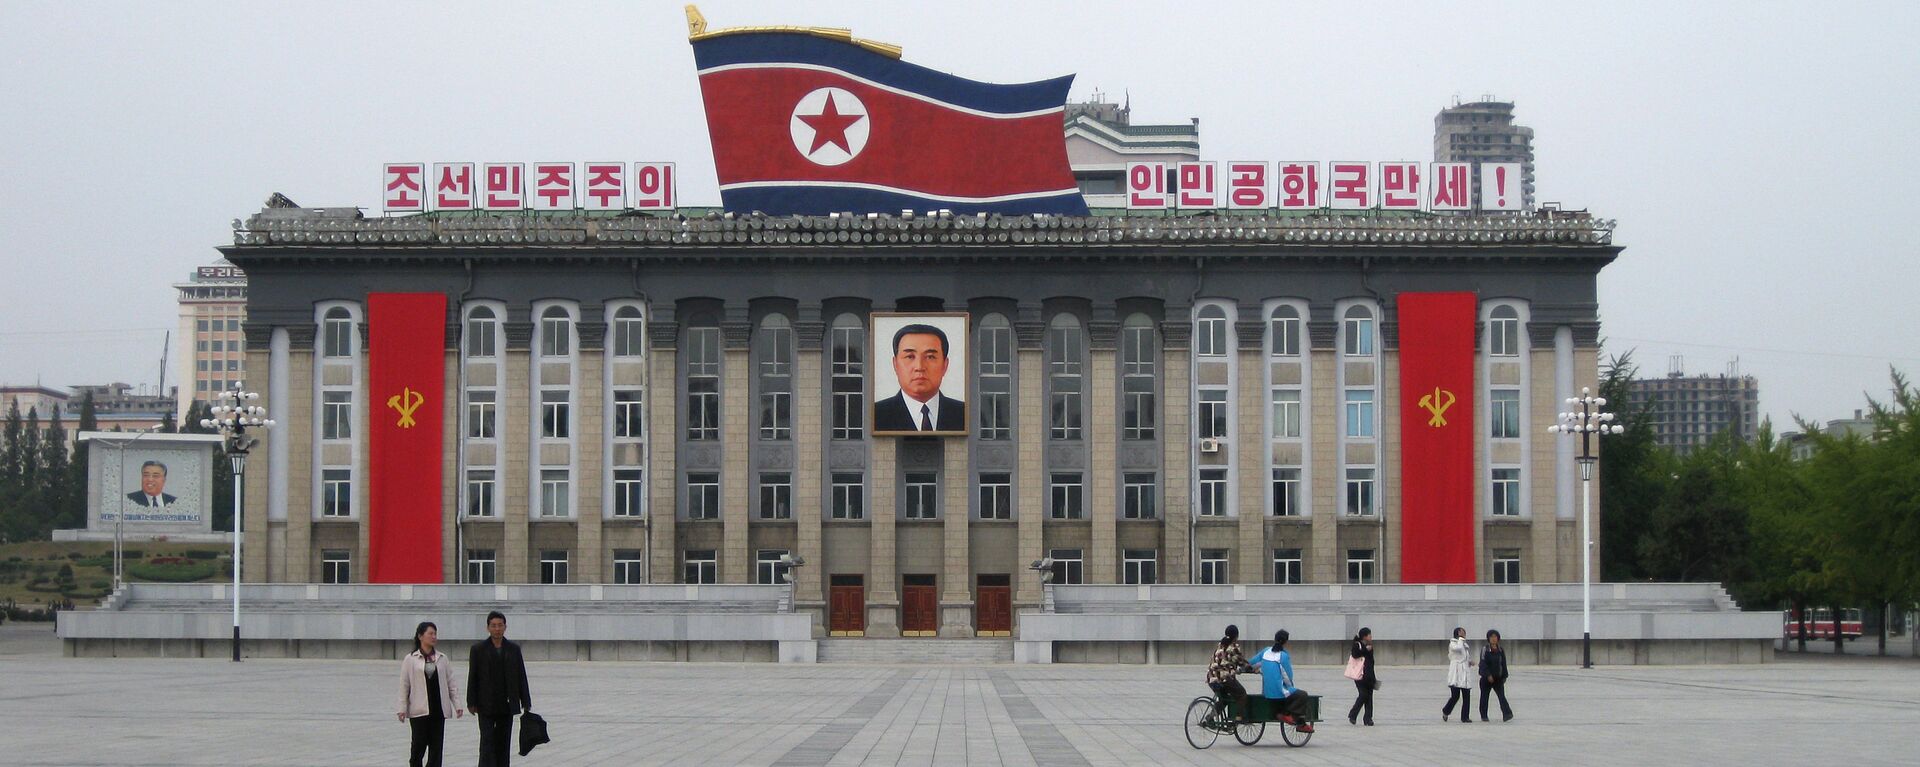 Центральная площадь имени основателя КНДР Ким Ир Сена в Пхеньяне. Архивное фото - Sputnik Кыргызстан, 1920, 09.09.2022